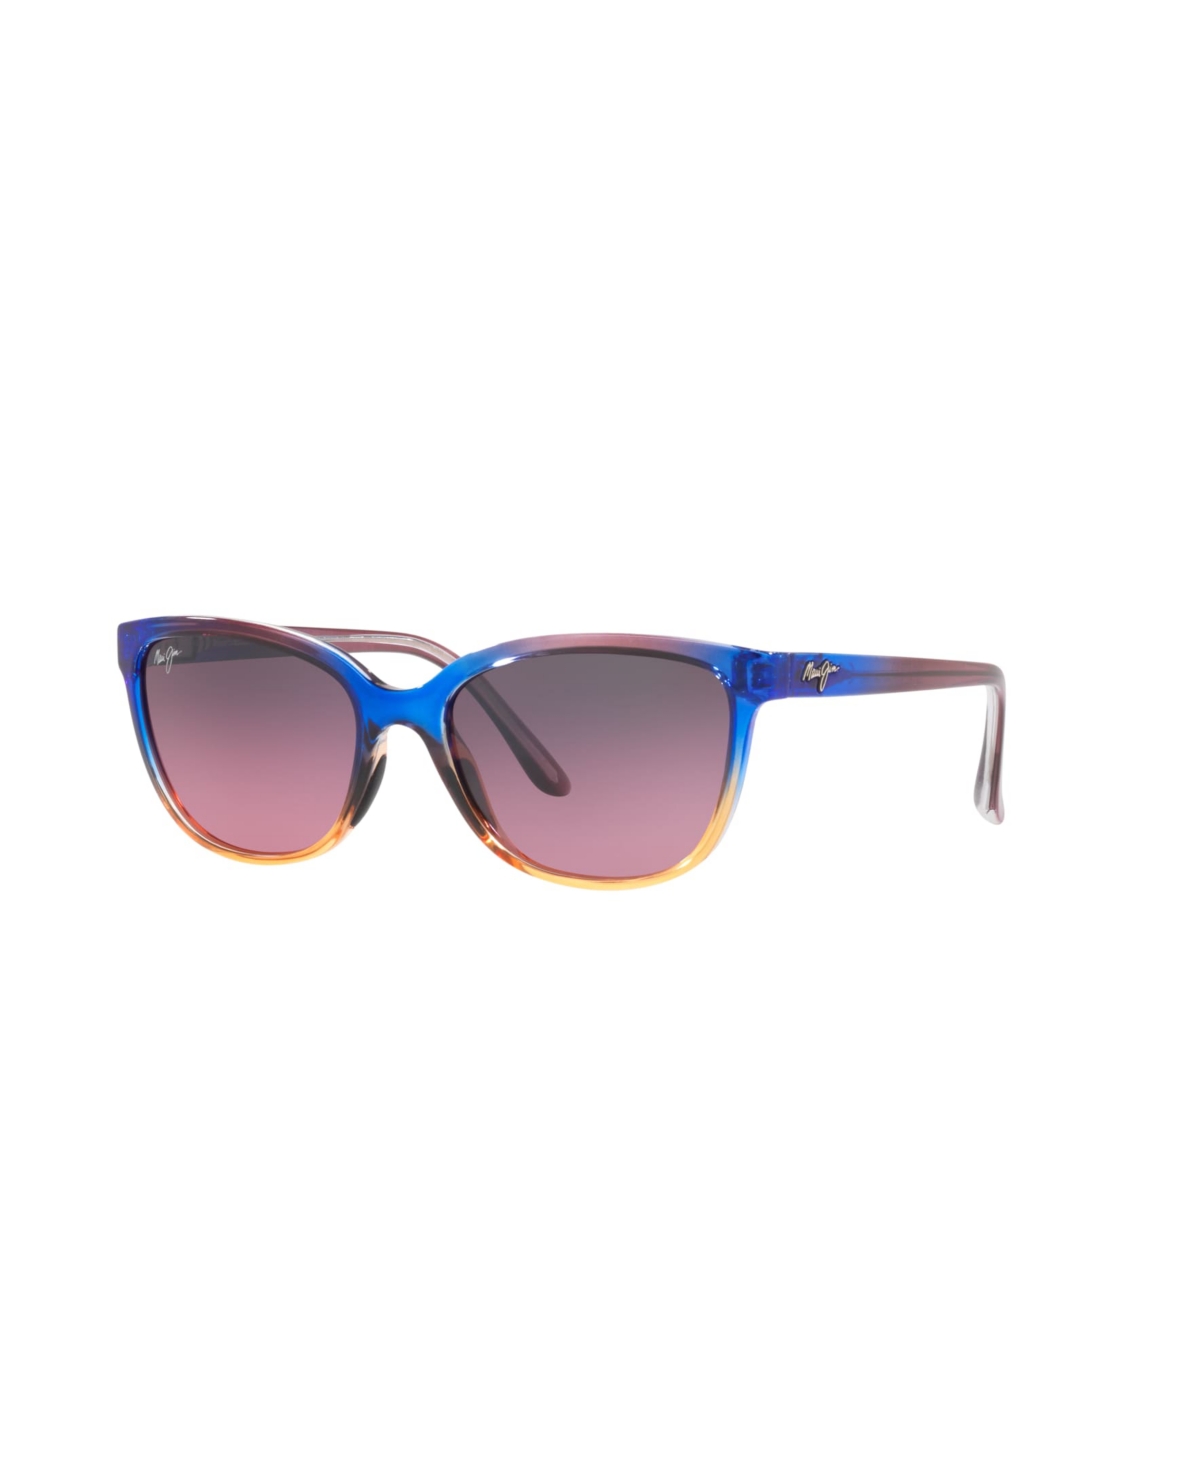 Women's Polarized Sunglasses, 758 Honi - Blue Multi